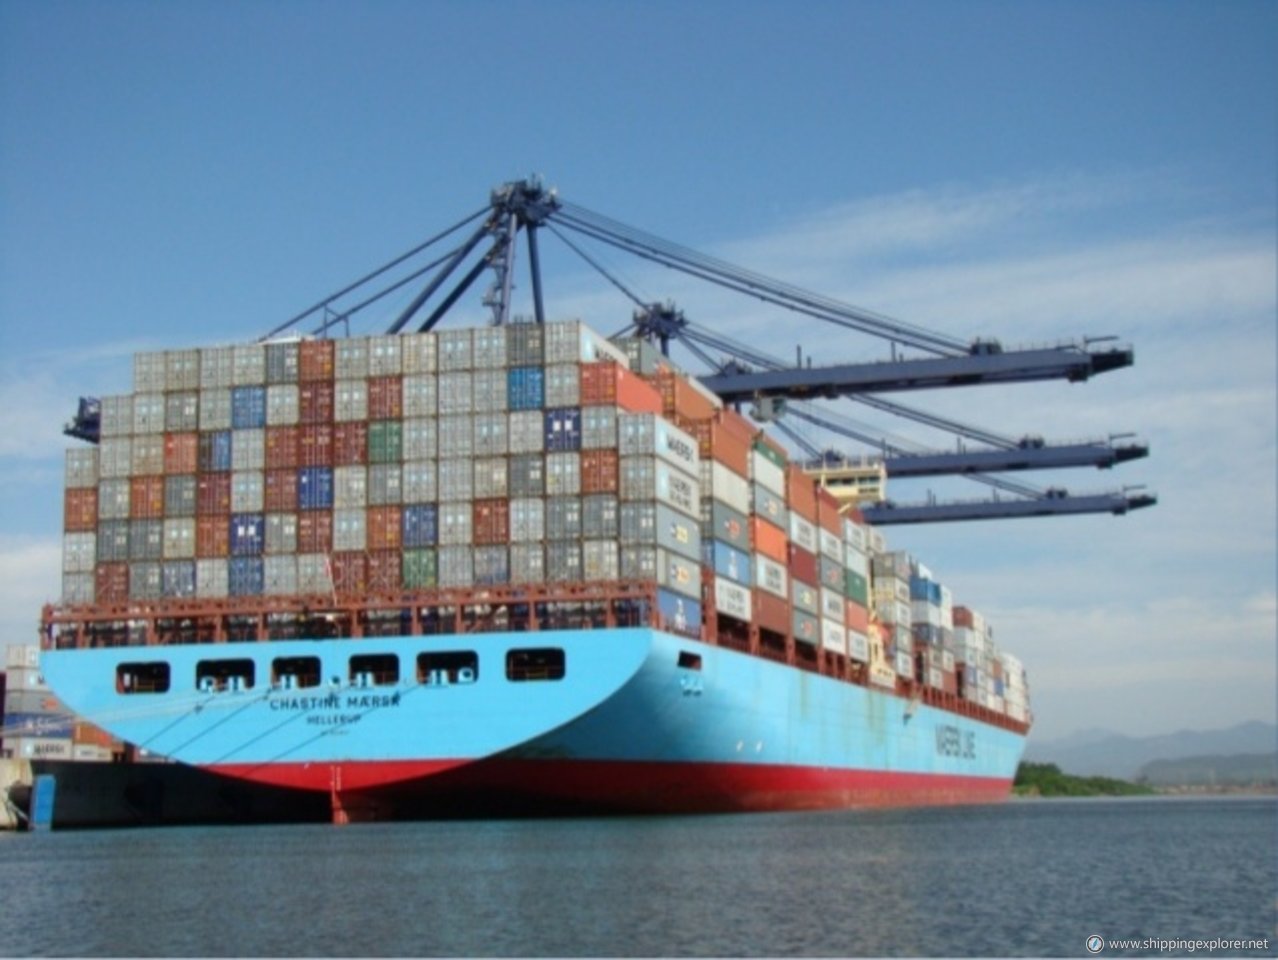 Chastine Maersk